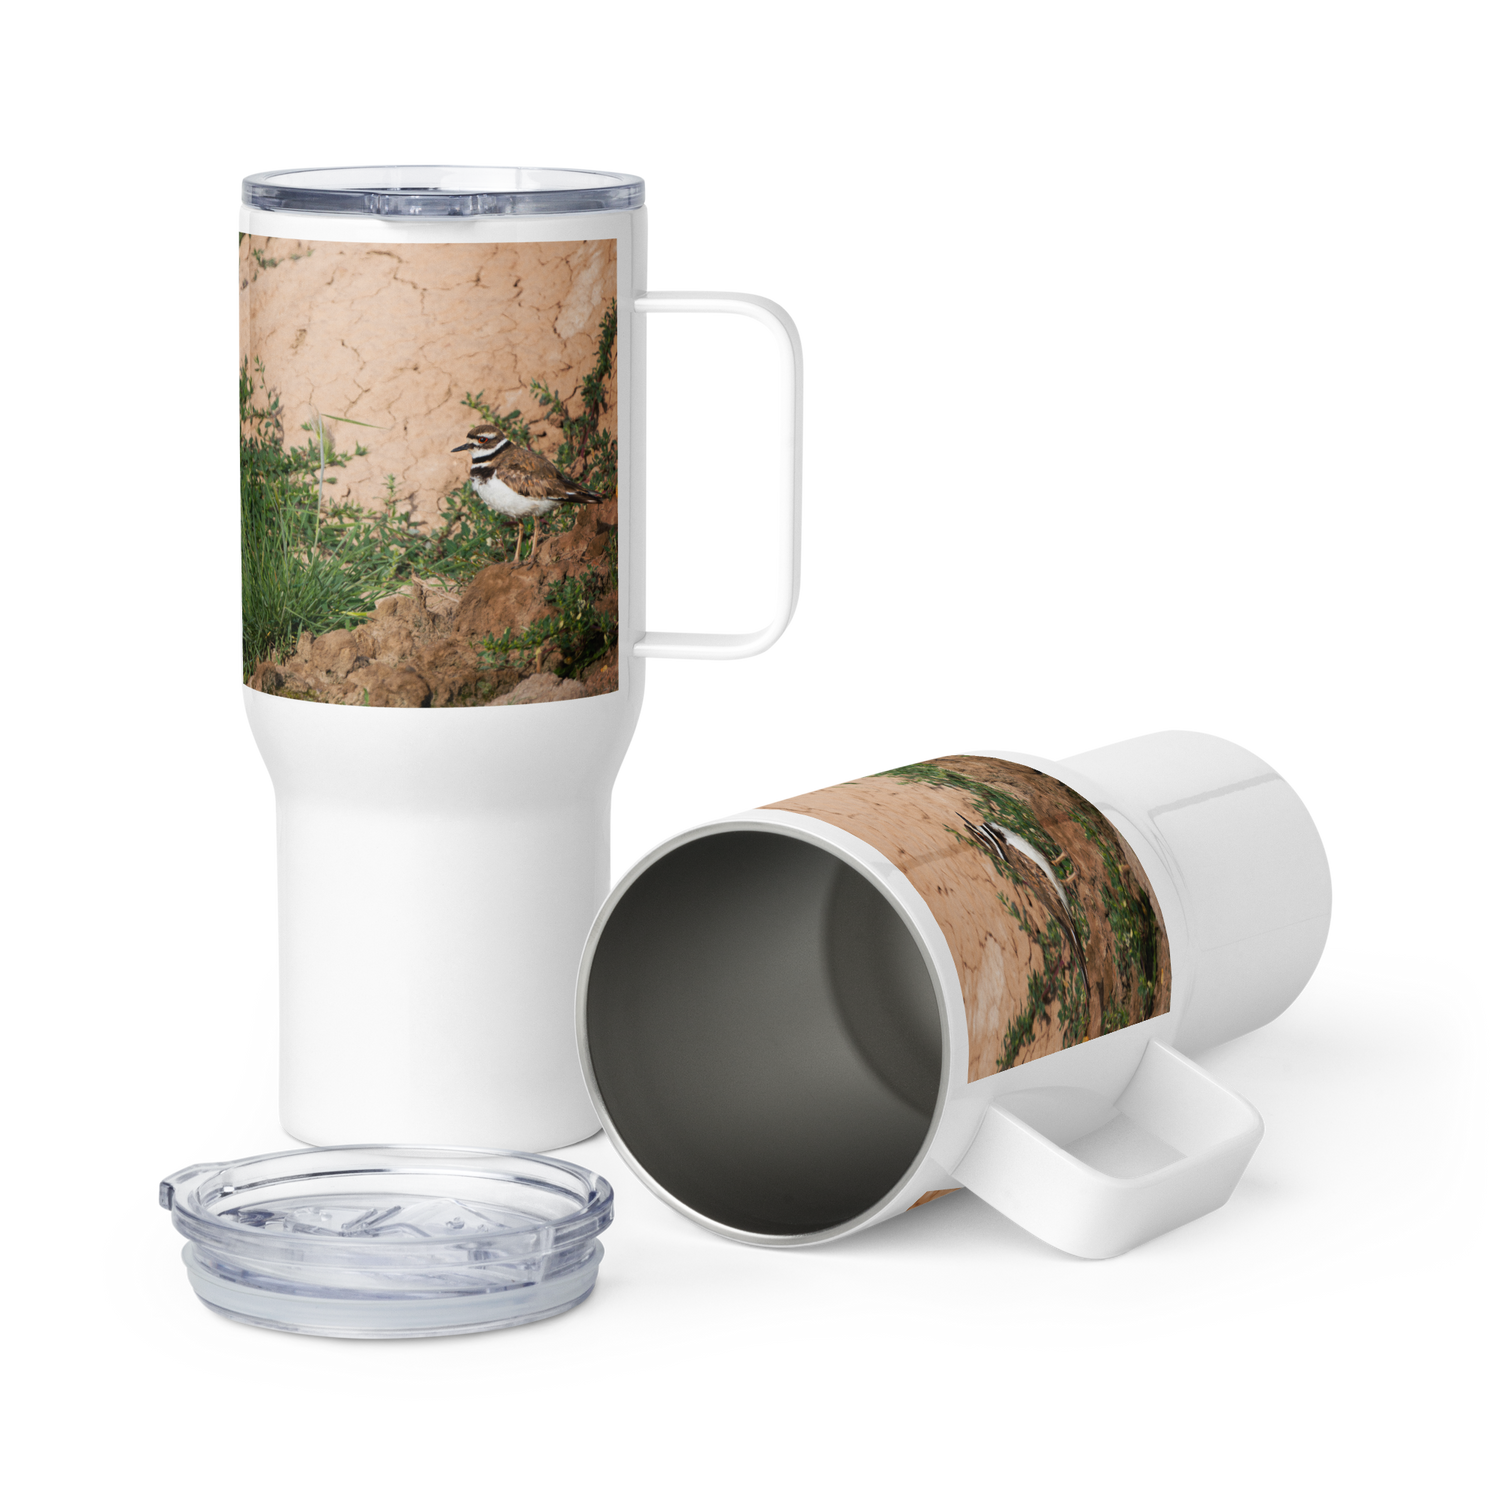 Killdeer Travel mug with a handle